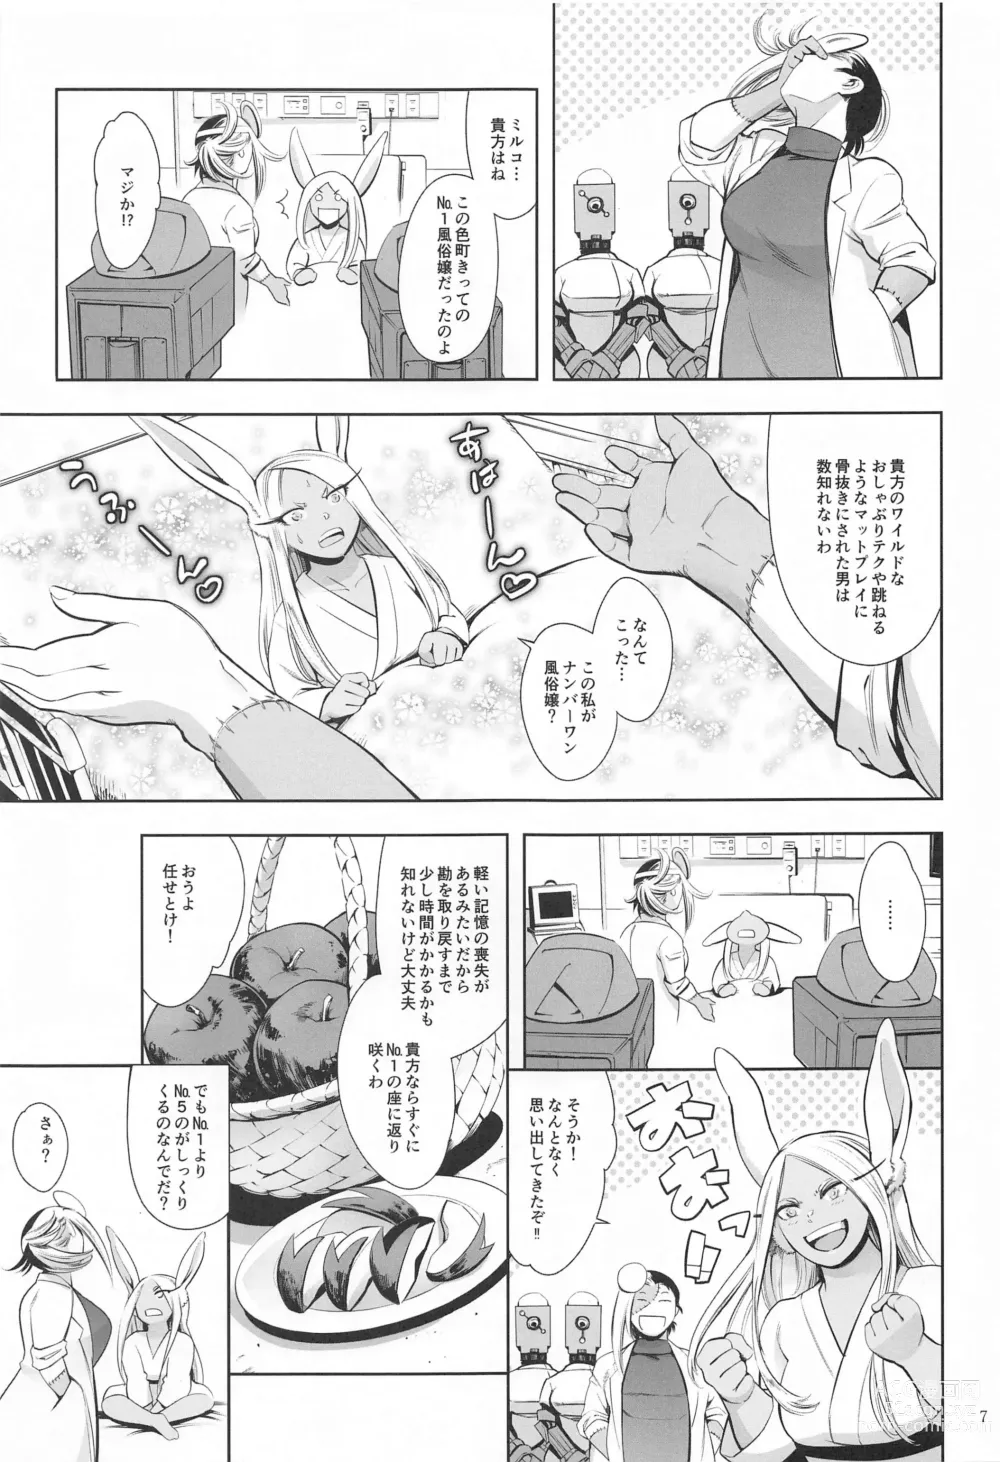 Page 6 of doujinshi Goshimei wa Usagi  desu ka?